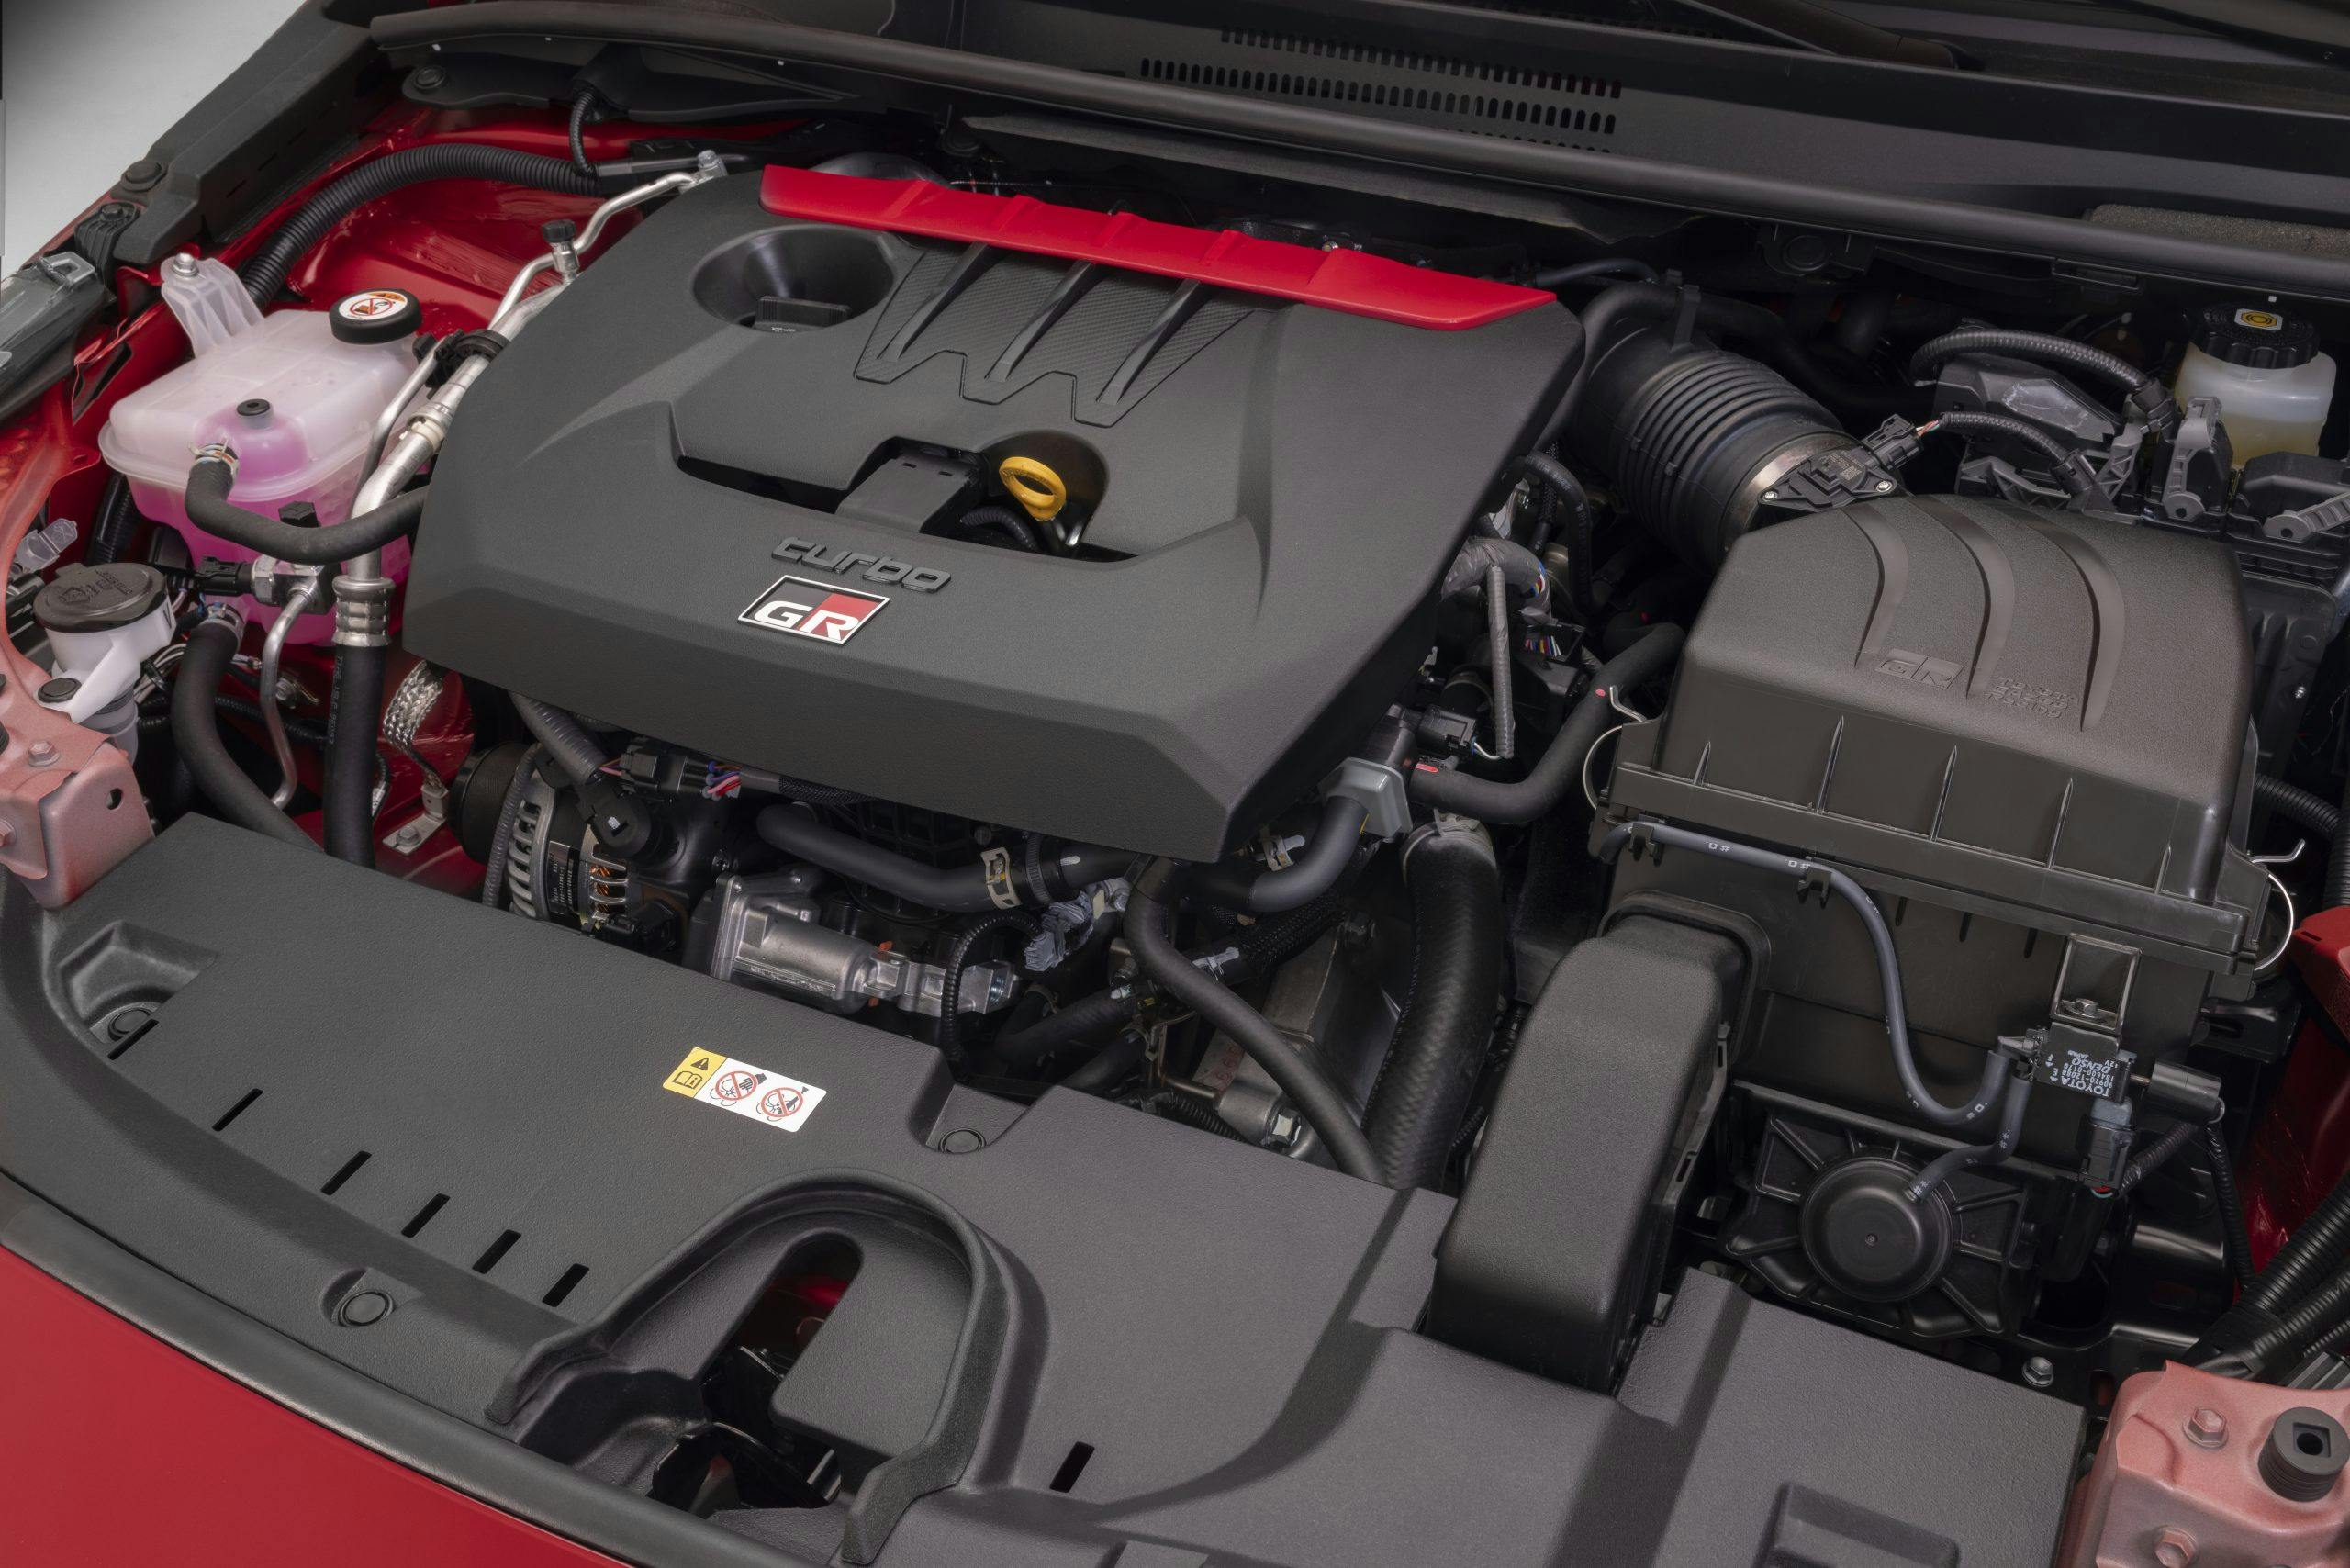 2023 Toyota GR Corolla G16E-GTS engine horsepower